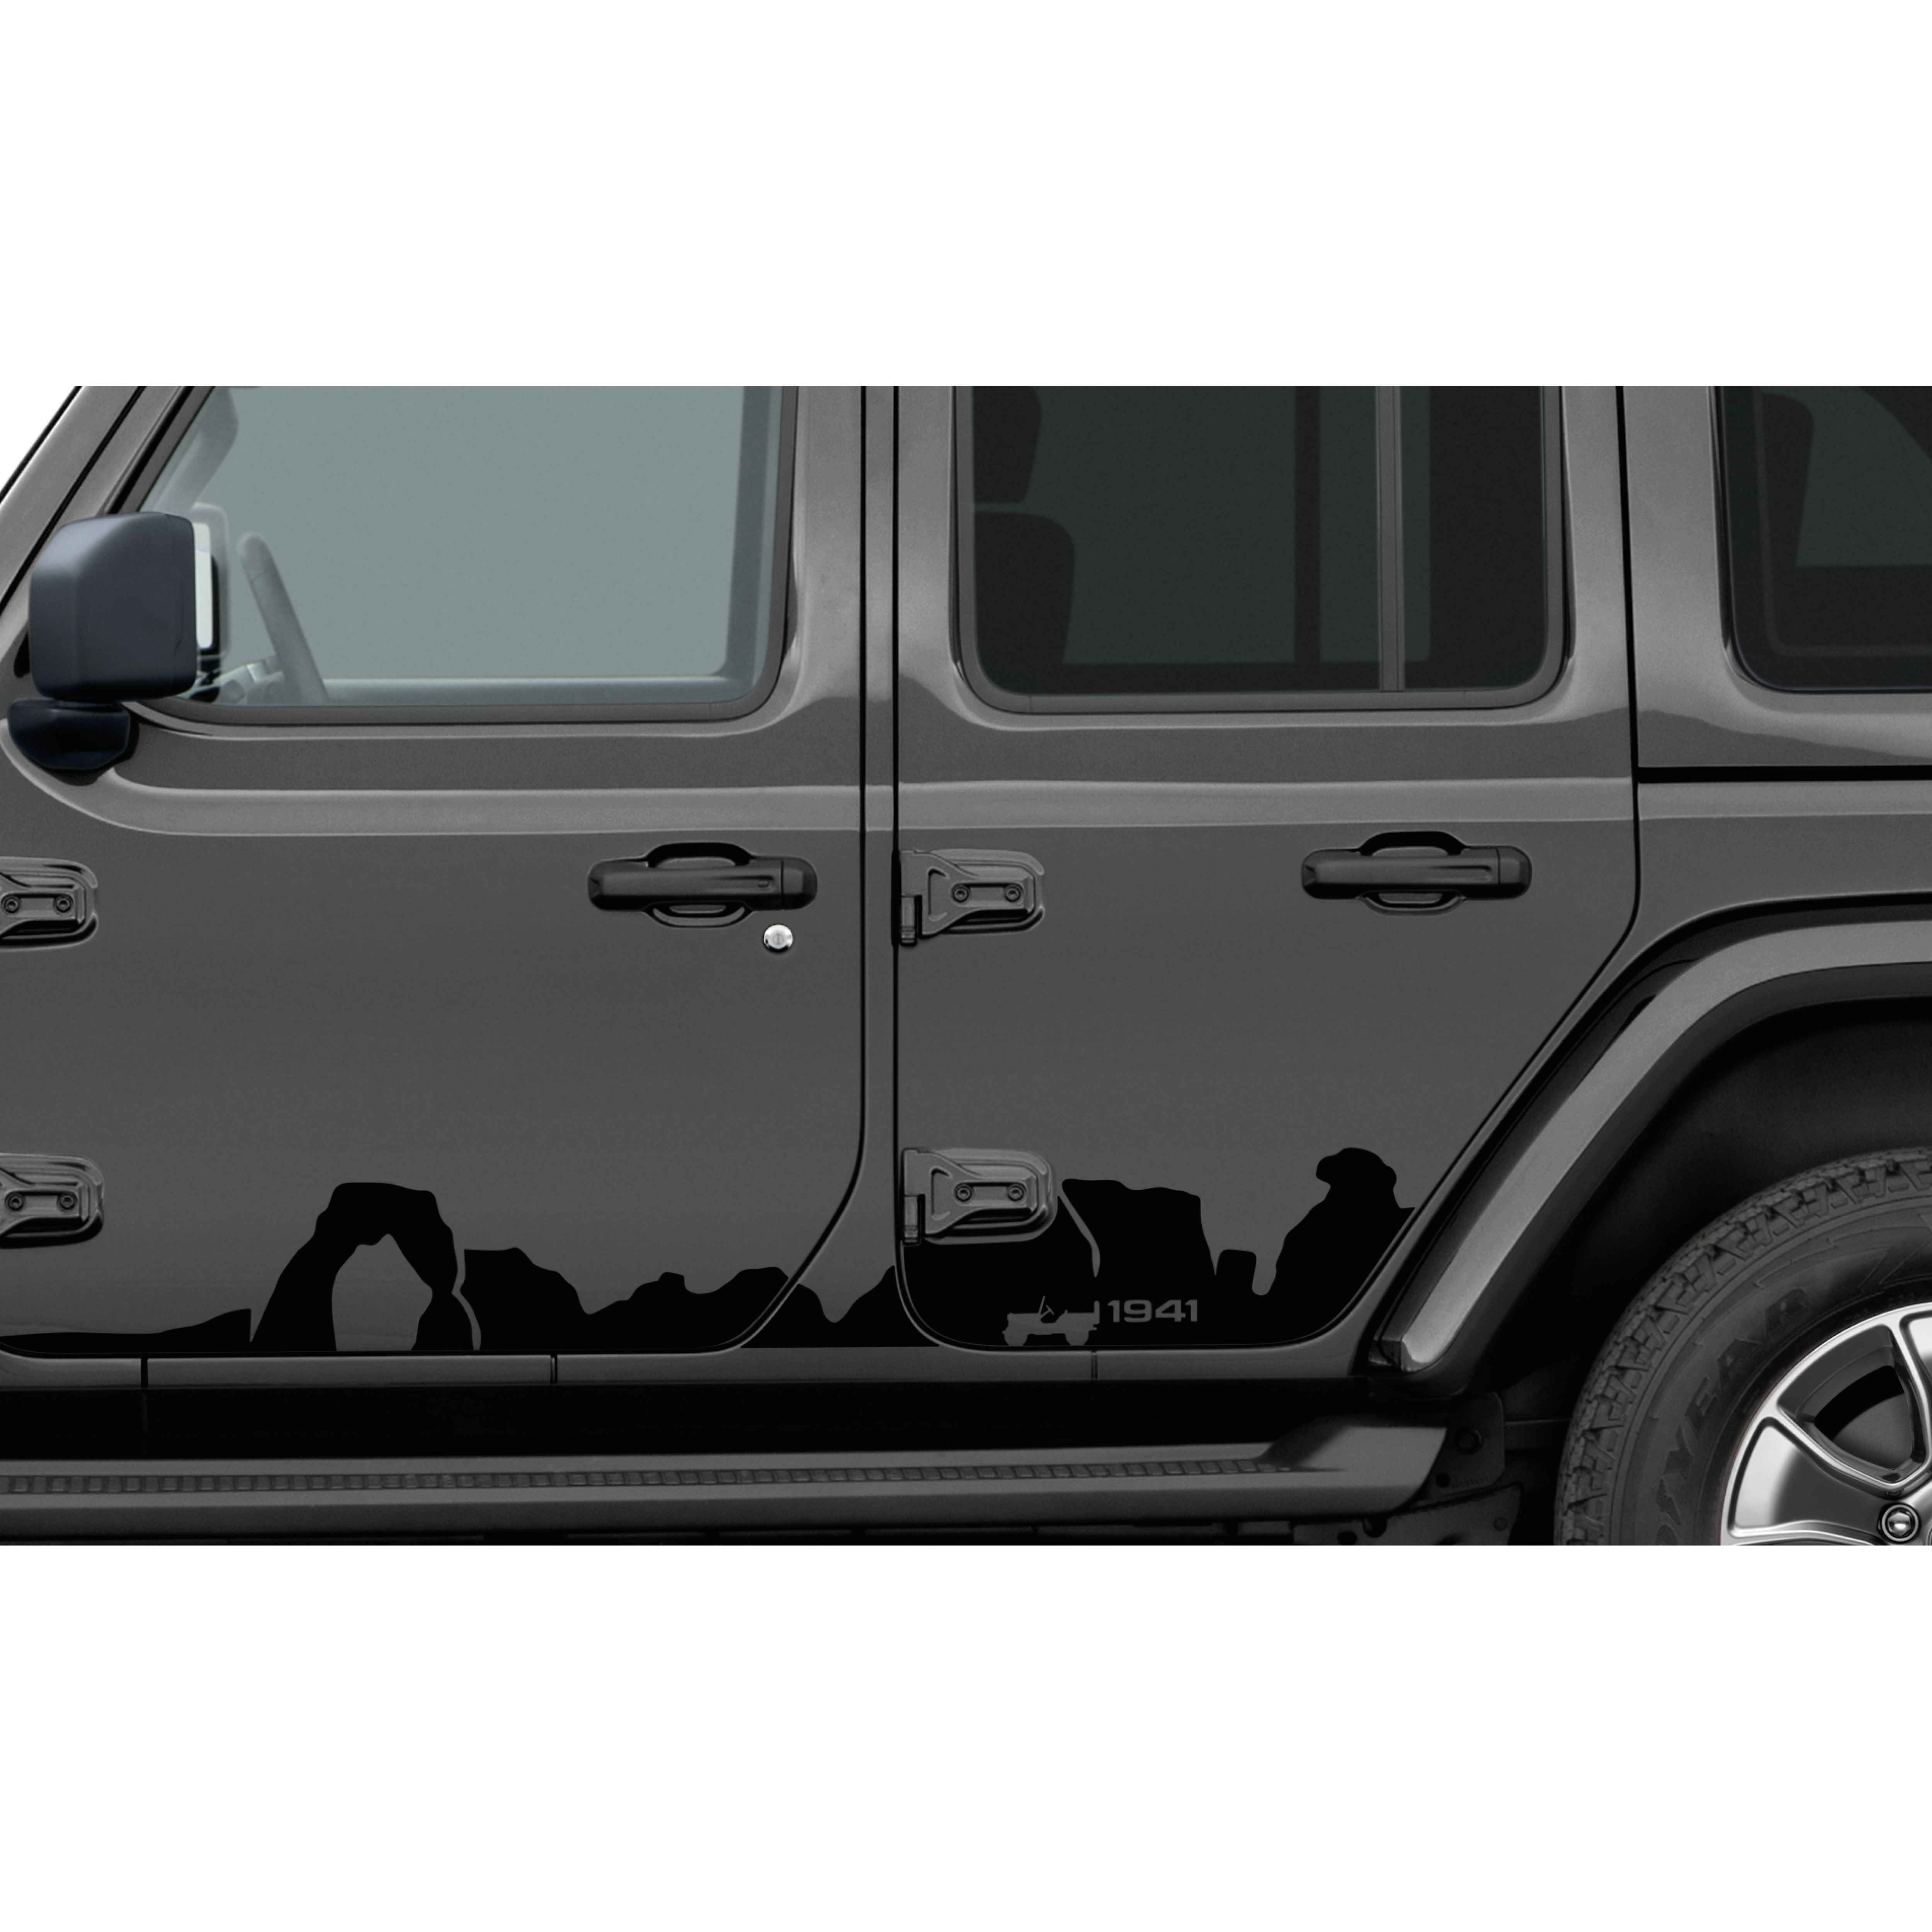 2020 Jeep Wrangler JL 4-Door Bodyside Graphic 82215732